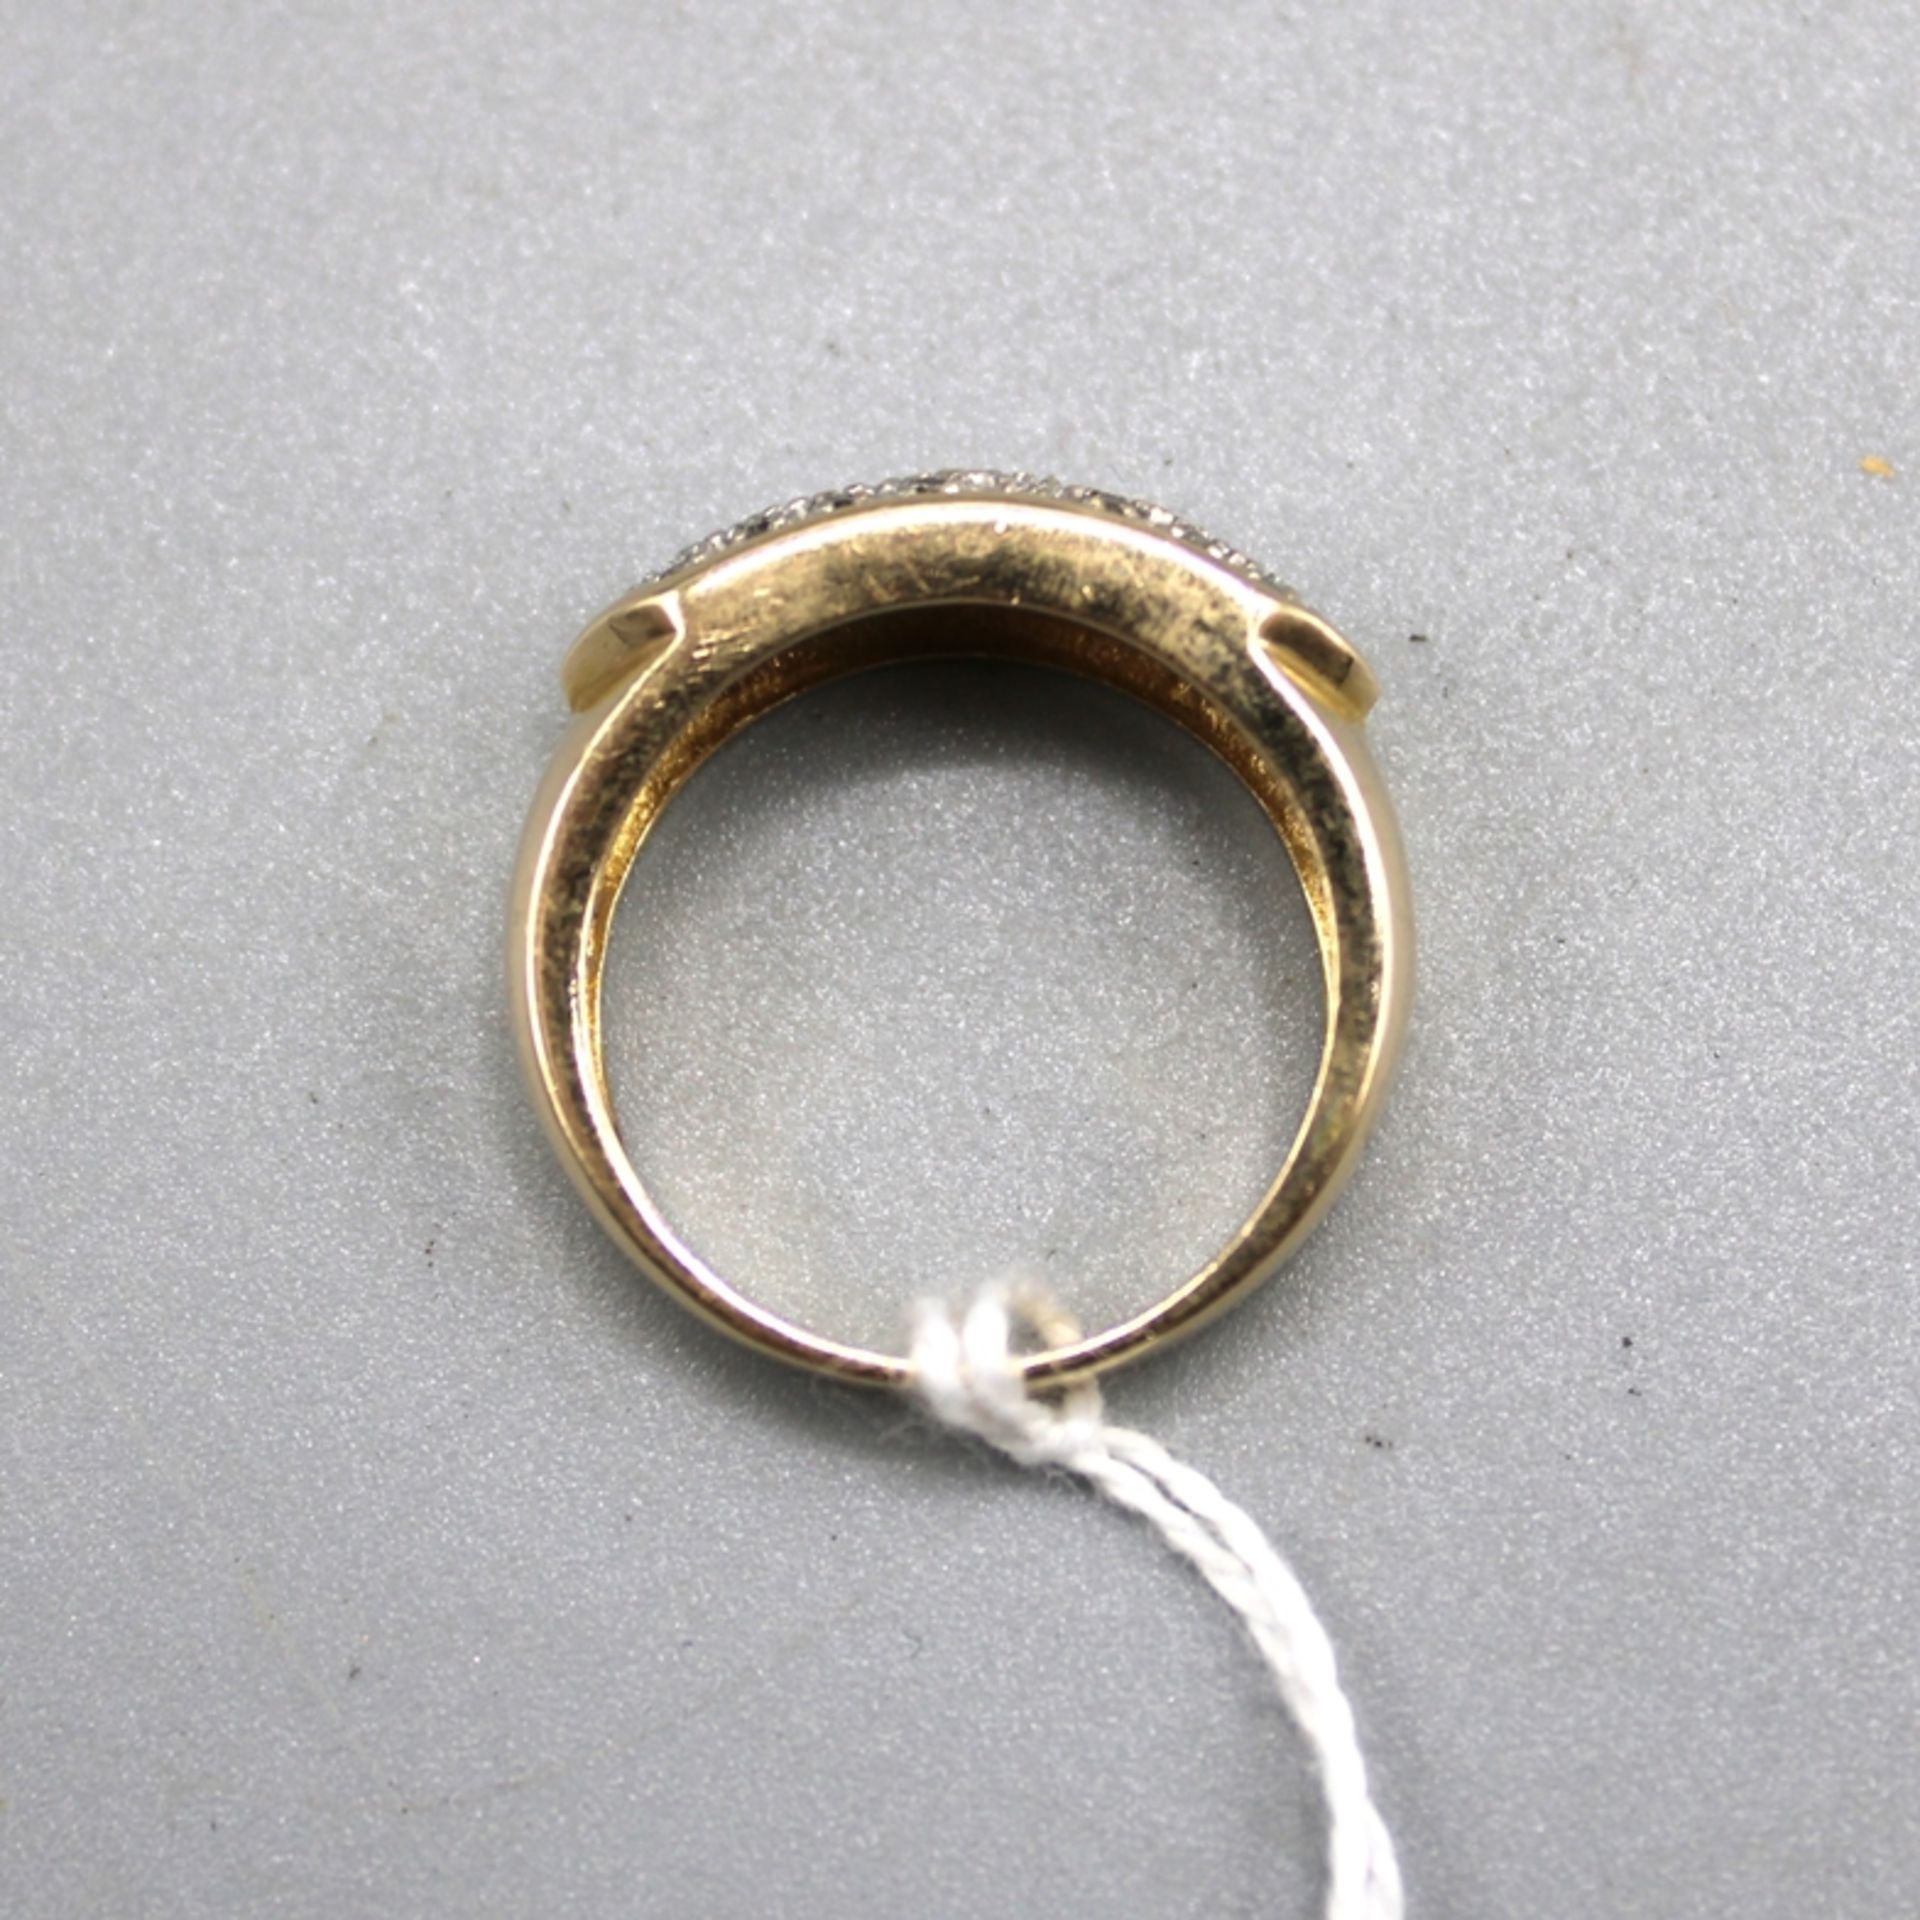 Diamantring 585 Gold, m. vielen kleinen Diamanten besetzt, Ring Ø ca. 17 mm, 5,4 g - Image 2 of 2